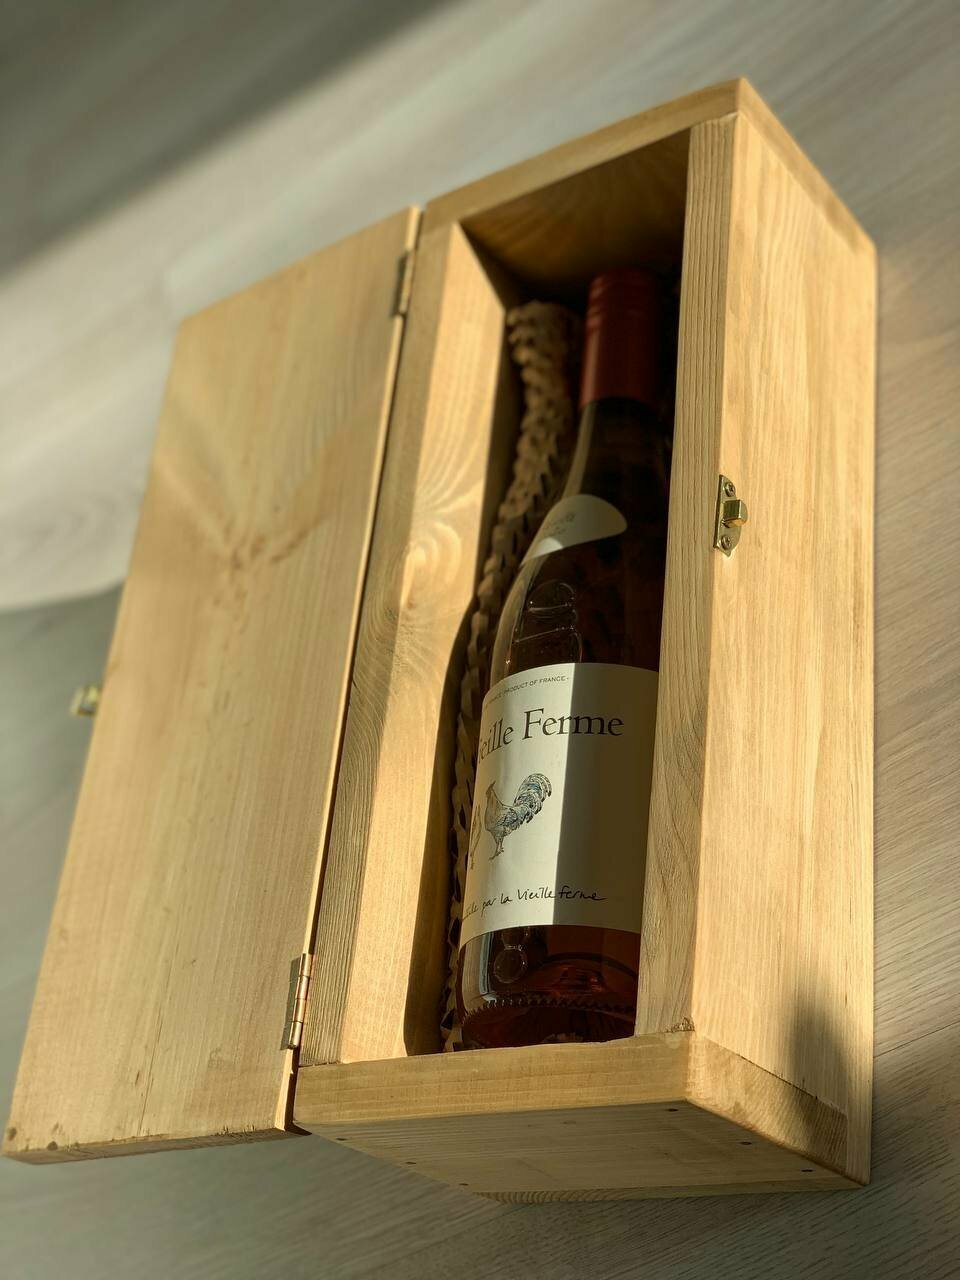 Подарочная деревянная коробка-футляр (ящик, шкатулка, упаковка) из массива сосны с замком для бутылки алкоголя (вина, коньяка, виски) WB-001